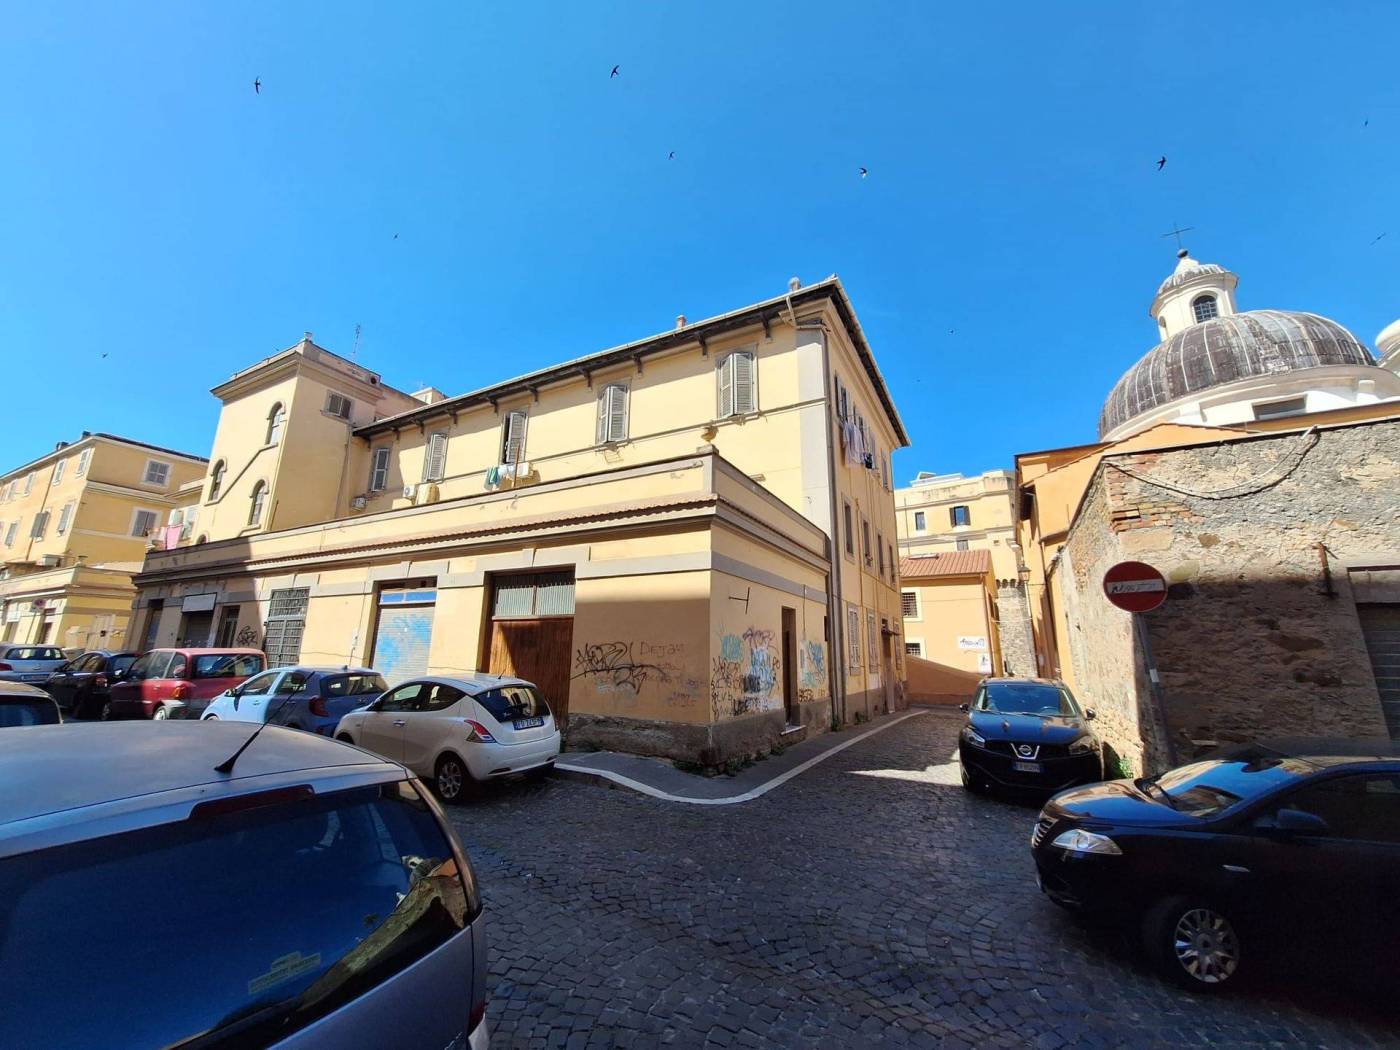 L'Agenzia Immobiliare Tecnoedil, propone in vendita un Appartamento Storico nel Cuore di Civitavecchia, di 140 mq. , situato al primo piano di una 